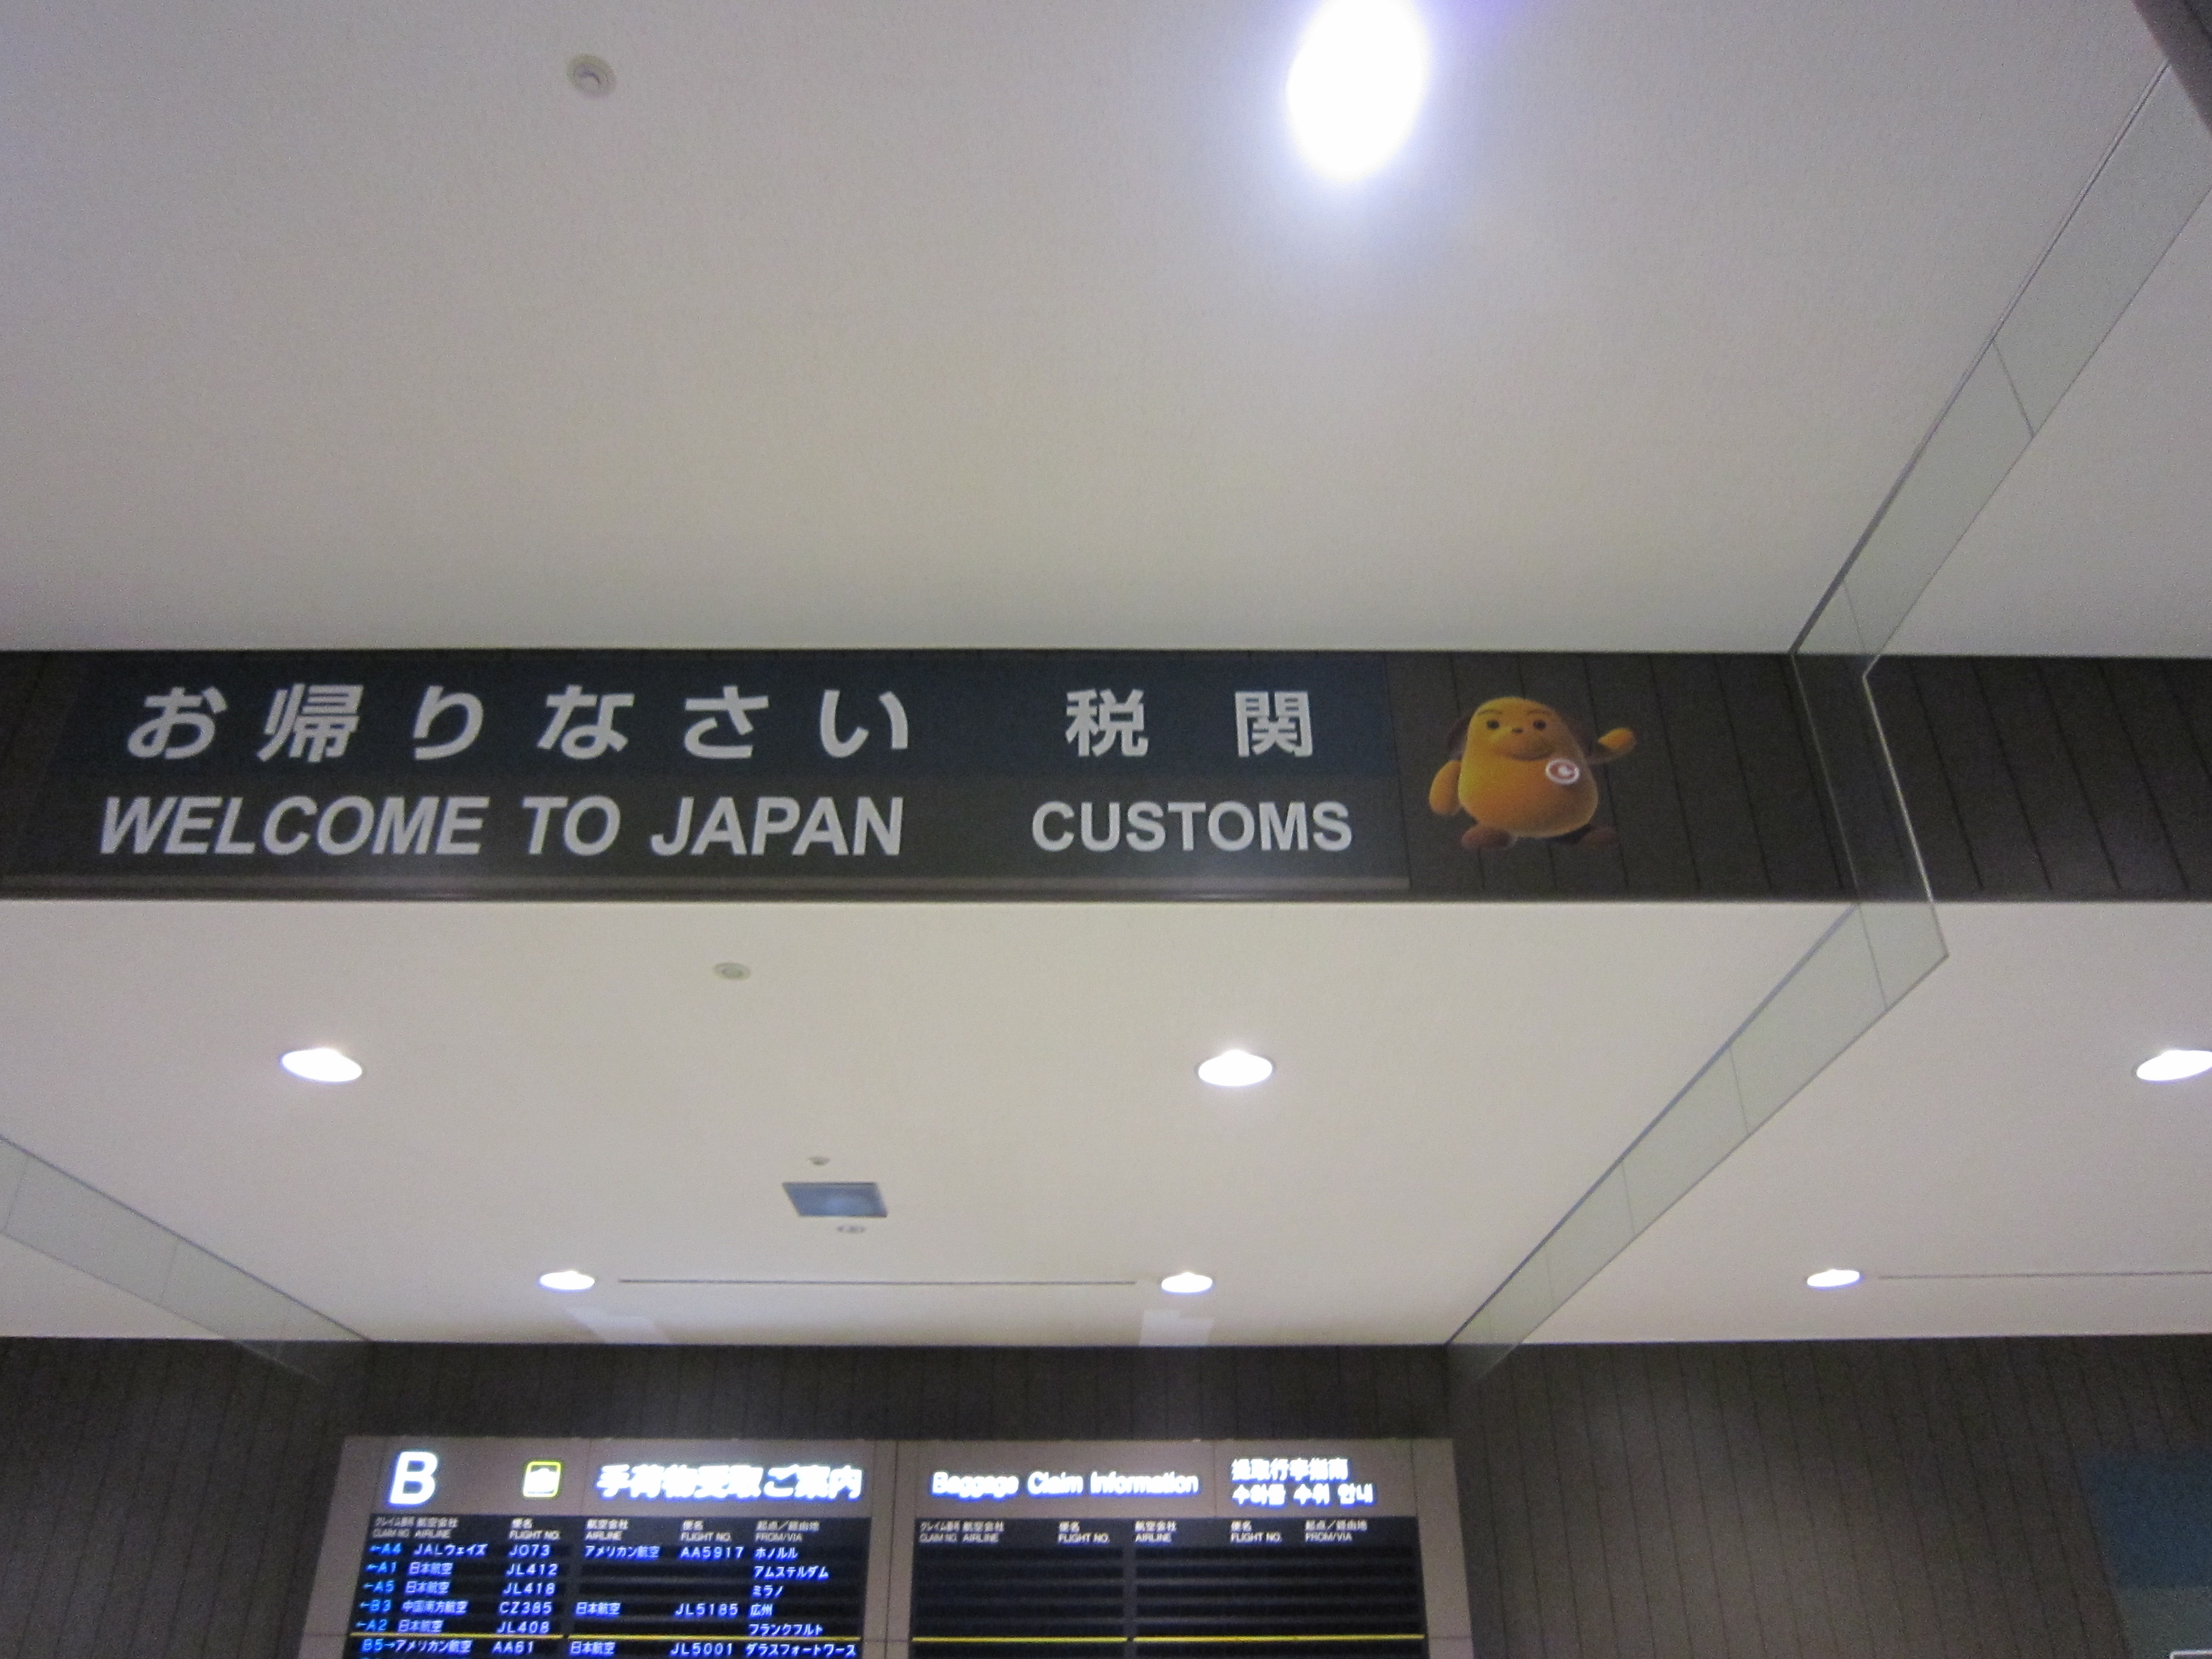 东京有两个机场,一个是成田机场,另一个是羽田机场.